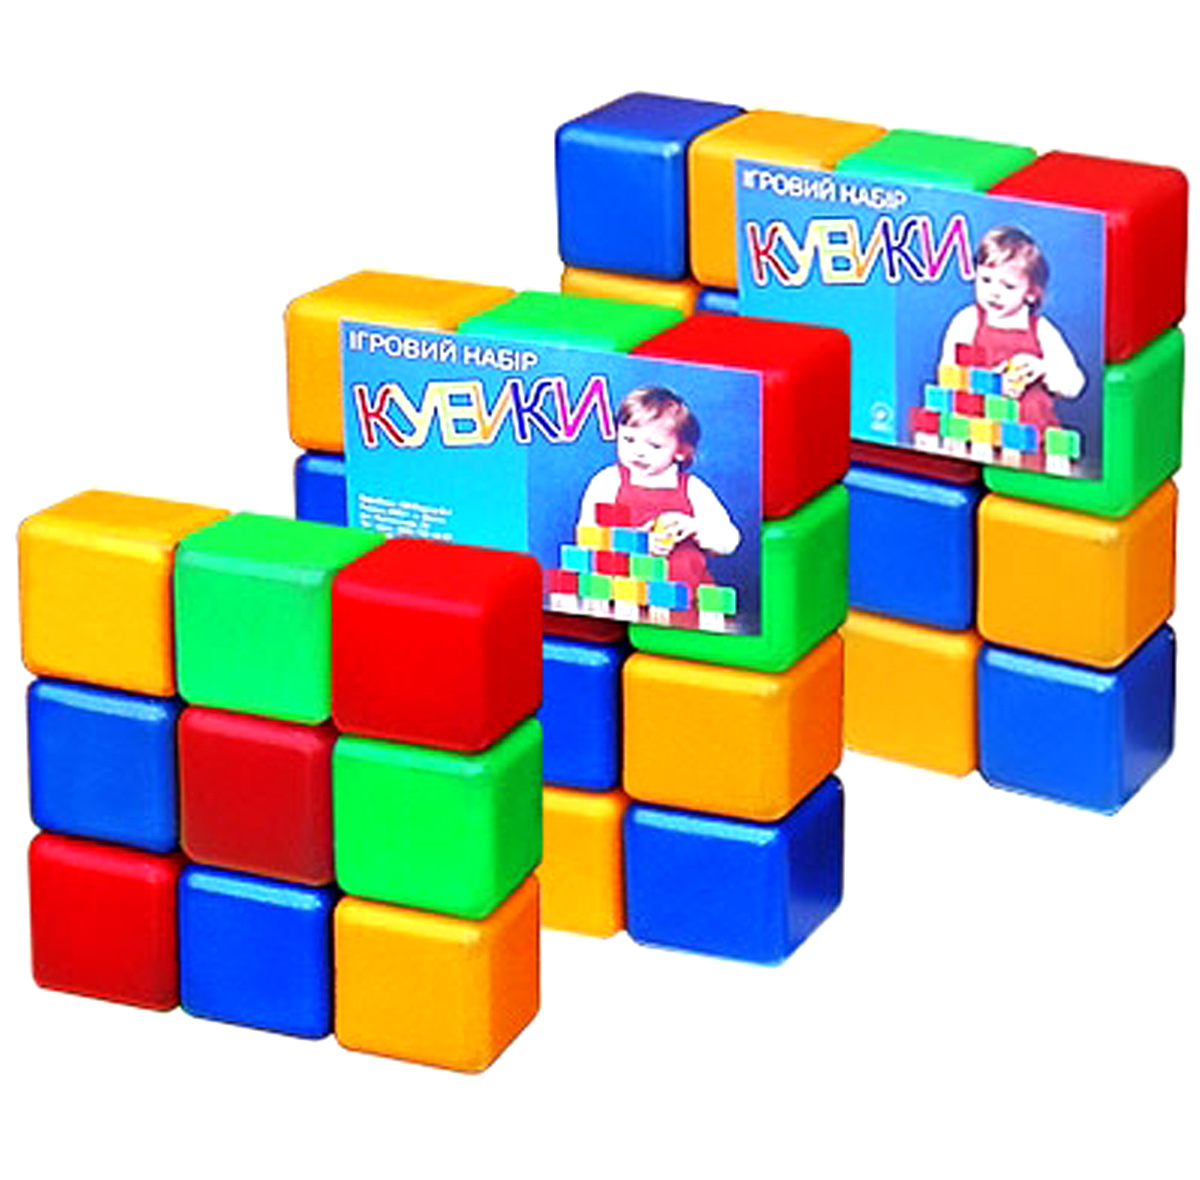 Набор кубиков цветных 12 штук